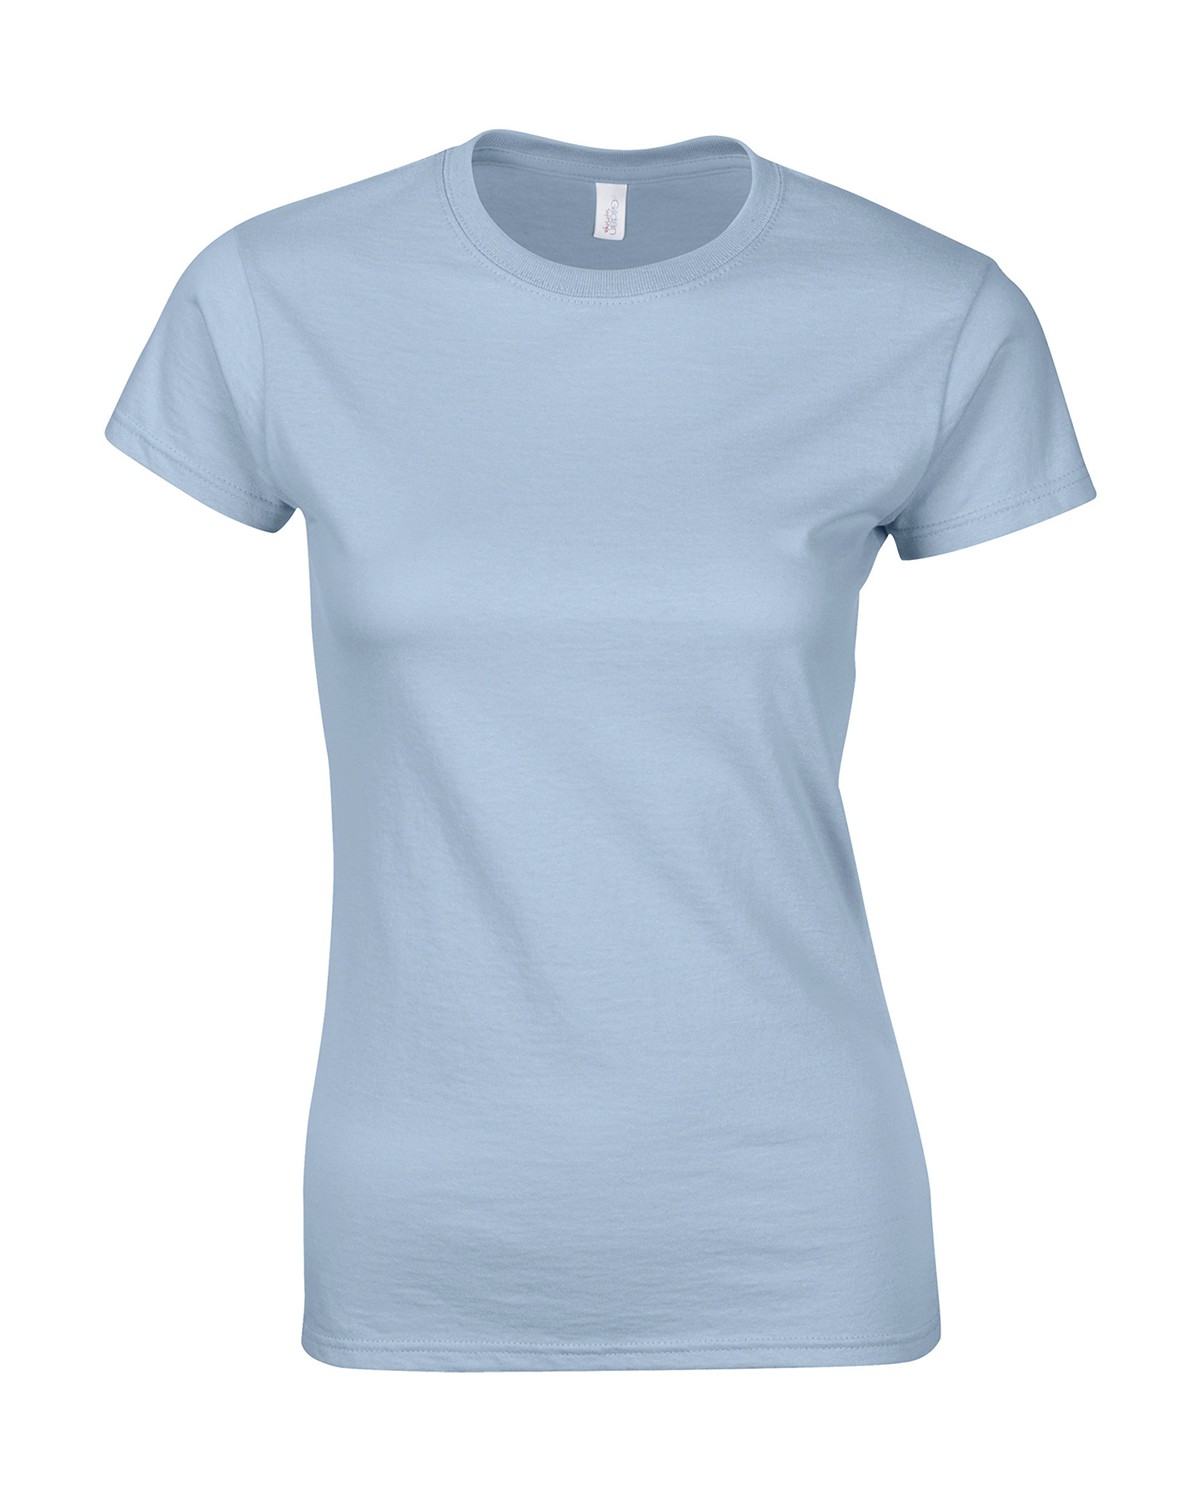 Gildan Softstyle Women's T-Shirt 64000L